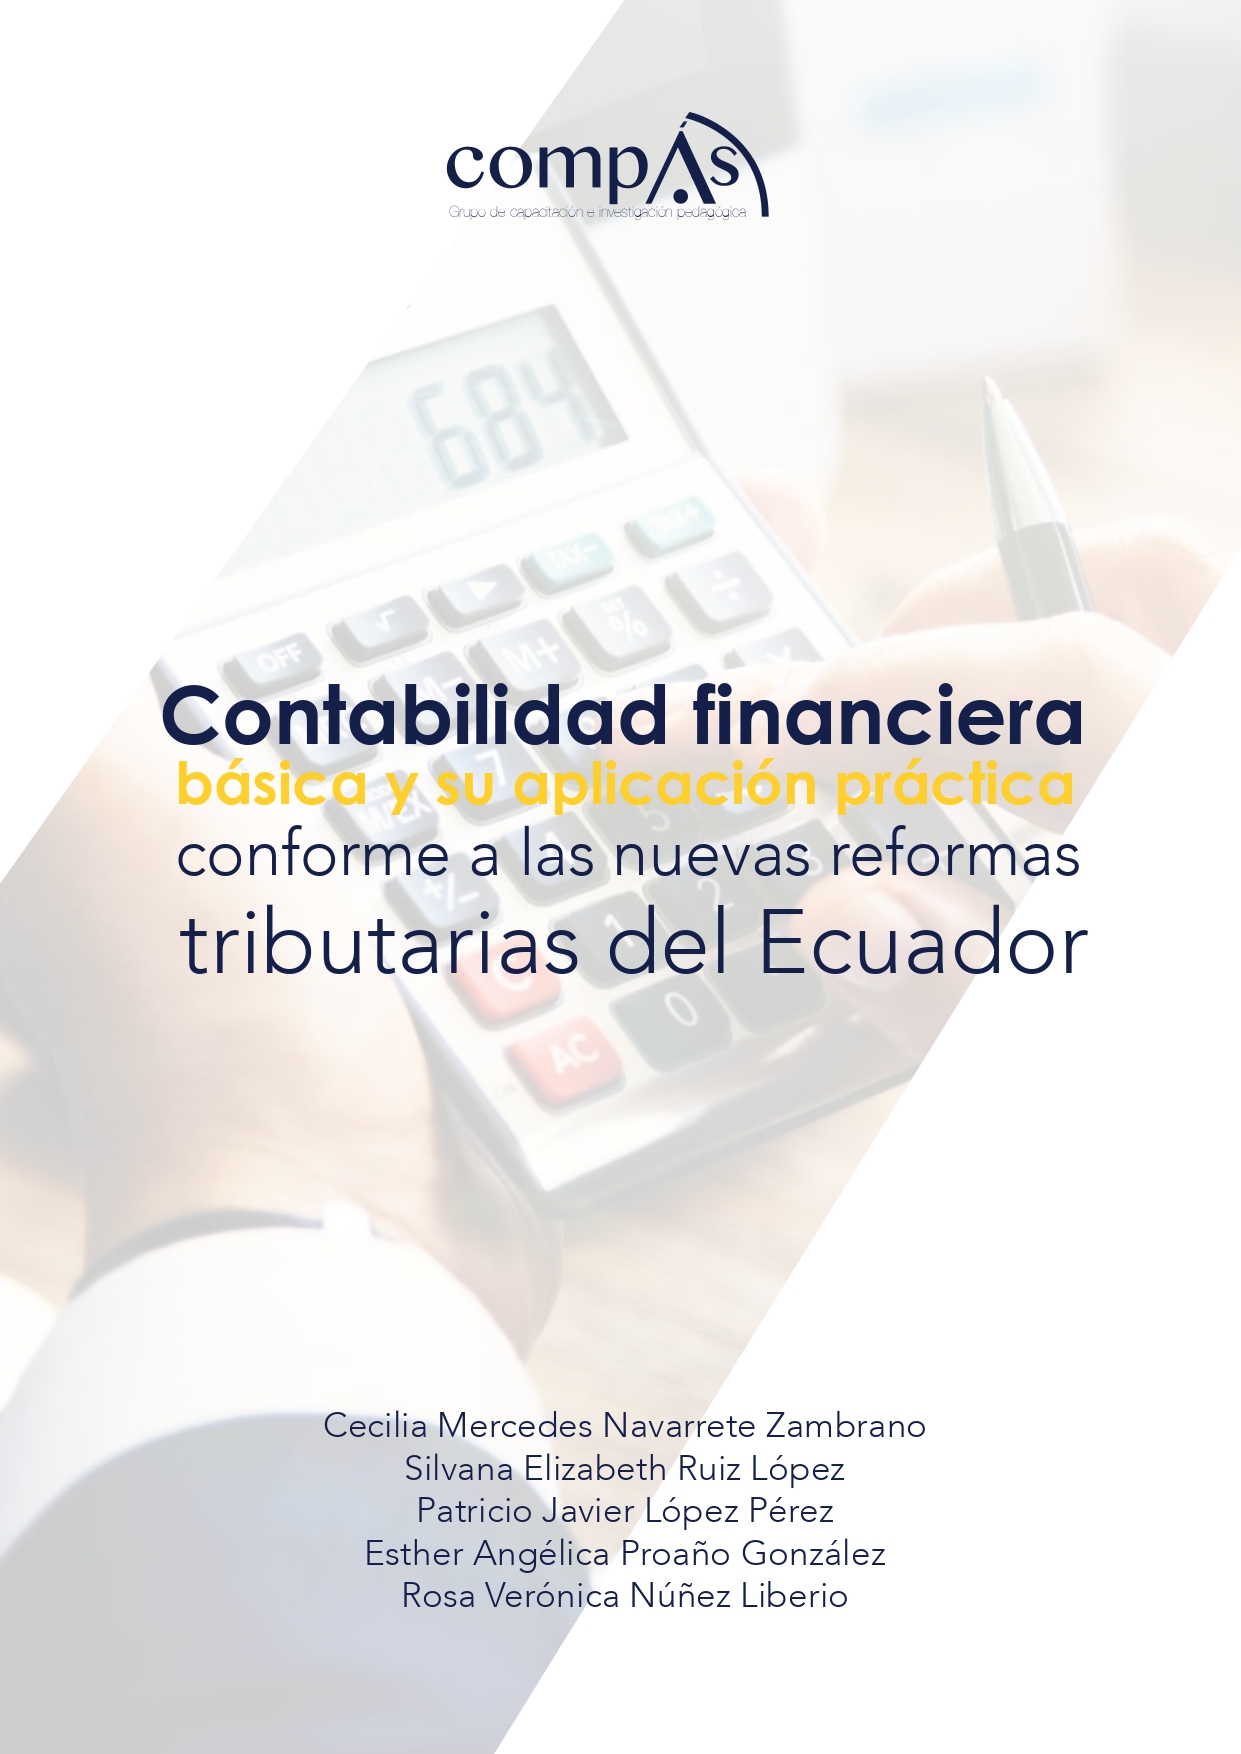 Imagen de portada del libro Contabilidad financiera básica y su aplicación práctica conforme a las nuevas reformas tributarias del Ecuador